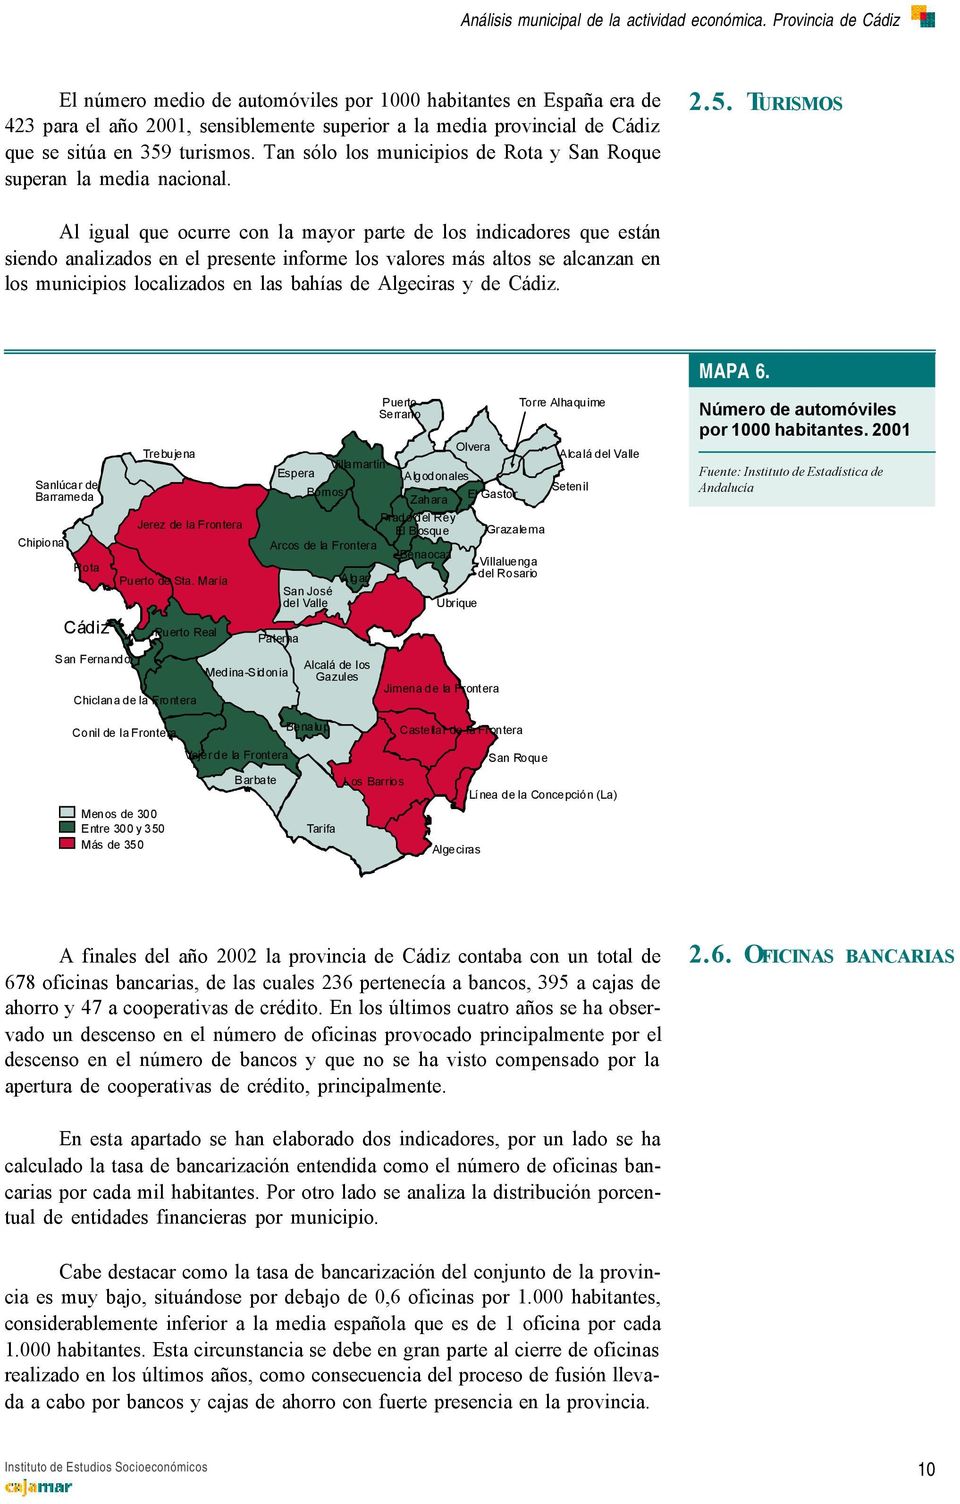 TURISMOS Al igual que ocurre con la mayor parte de los indicadores que están siendo analizados en el presente informe los valores más altos se alcanzan en los municipios localizados en las bahías de